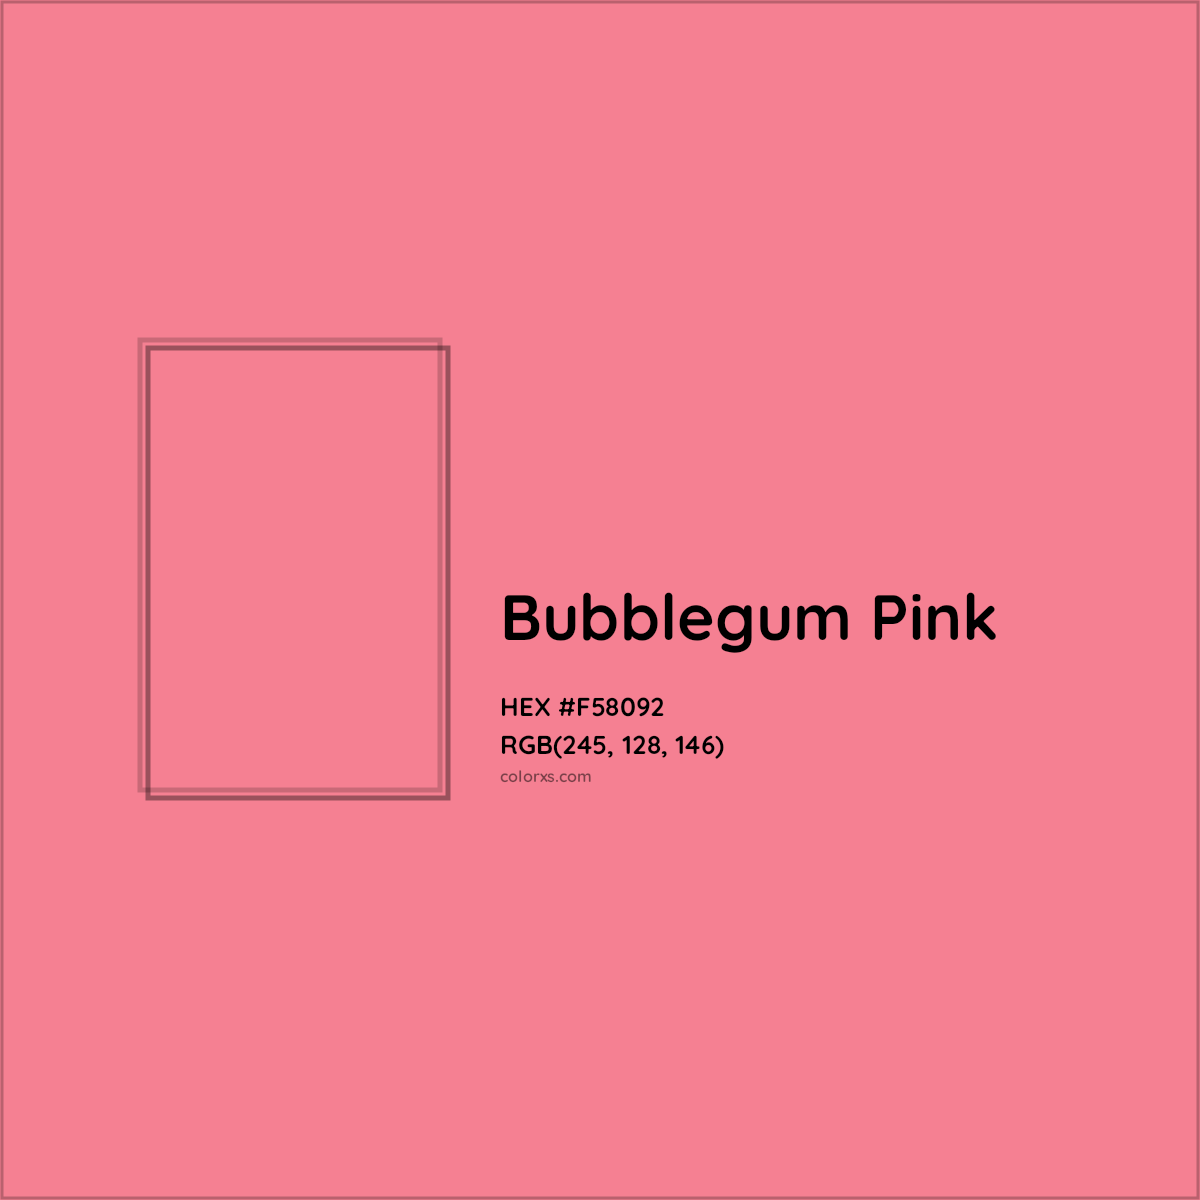 8. "Bubblegum Pink" - wide 4